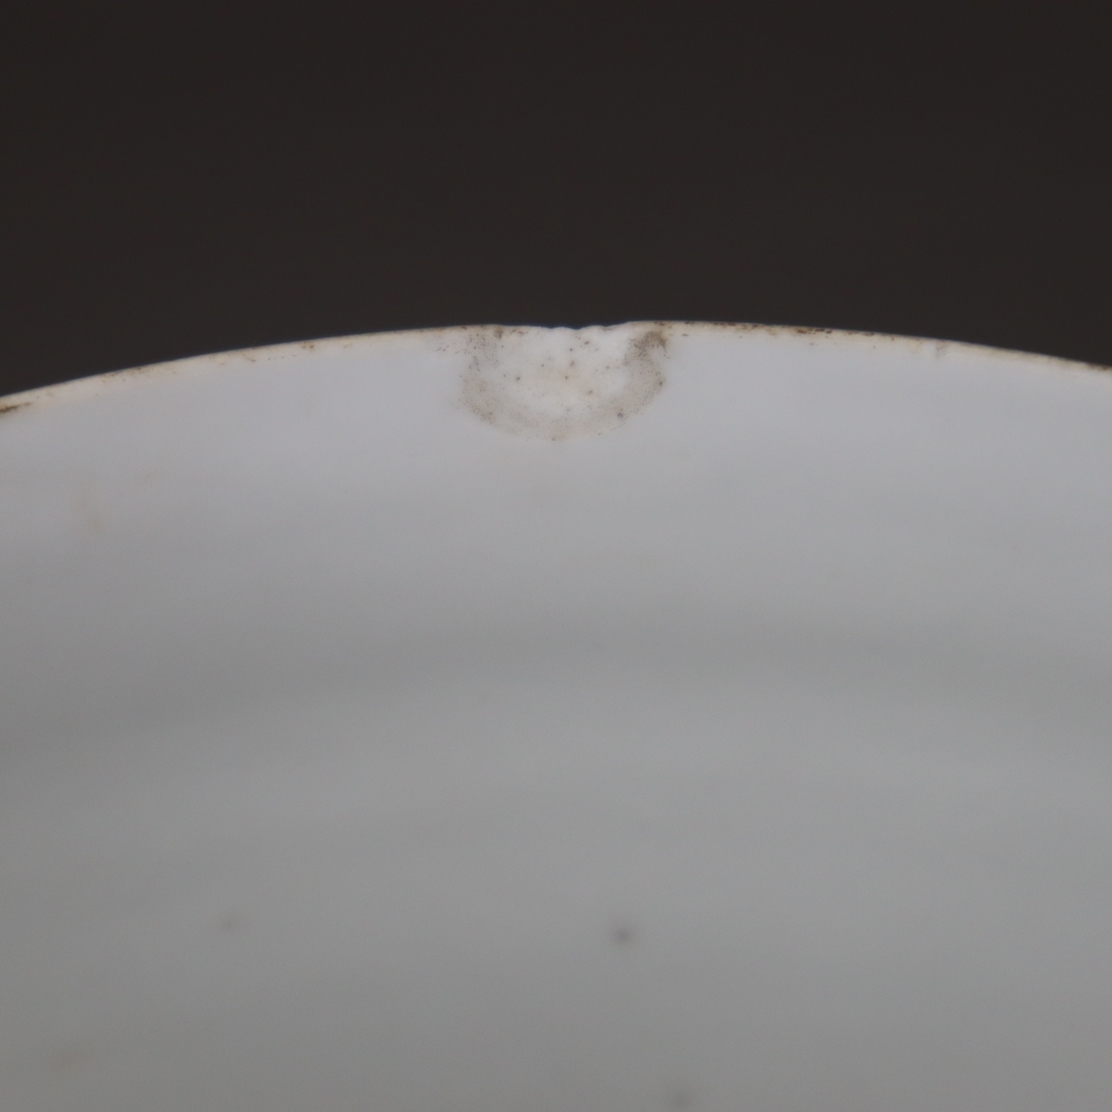 Deckeldose - China, Porzellan, runde zylindrische Form, Schauseite und Stülpdec - Image 13 of 14